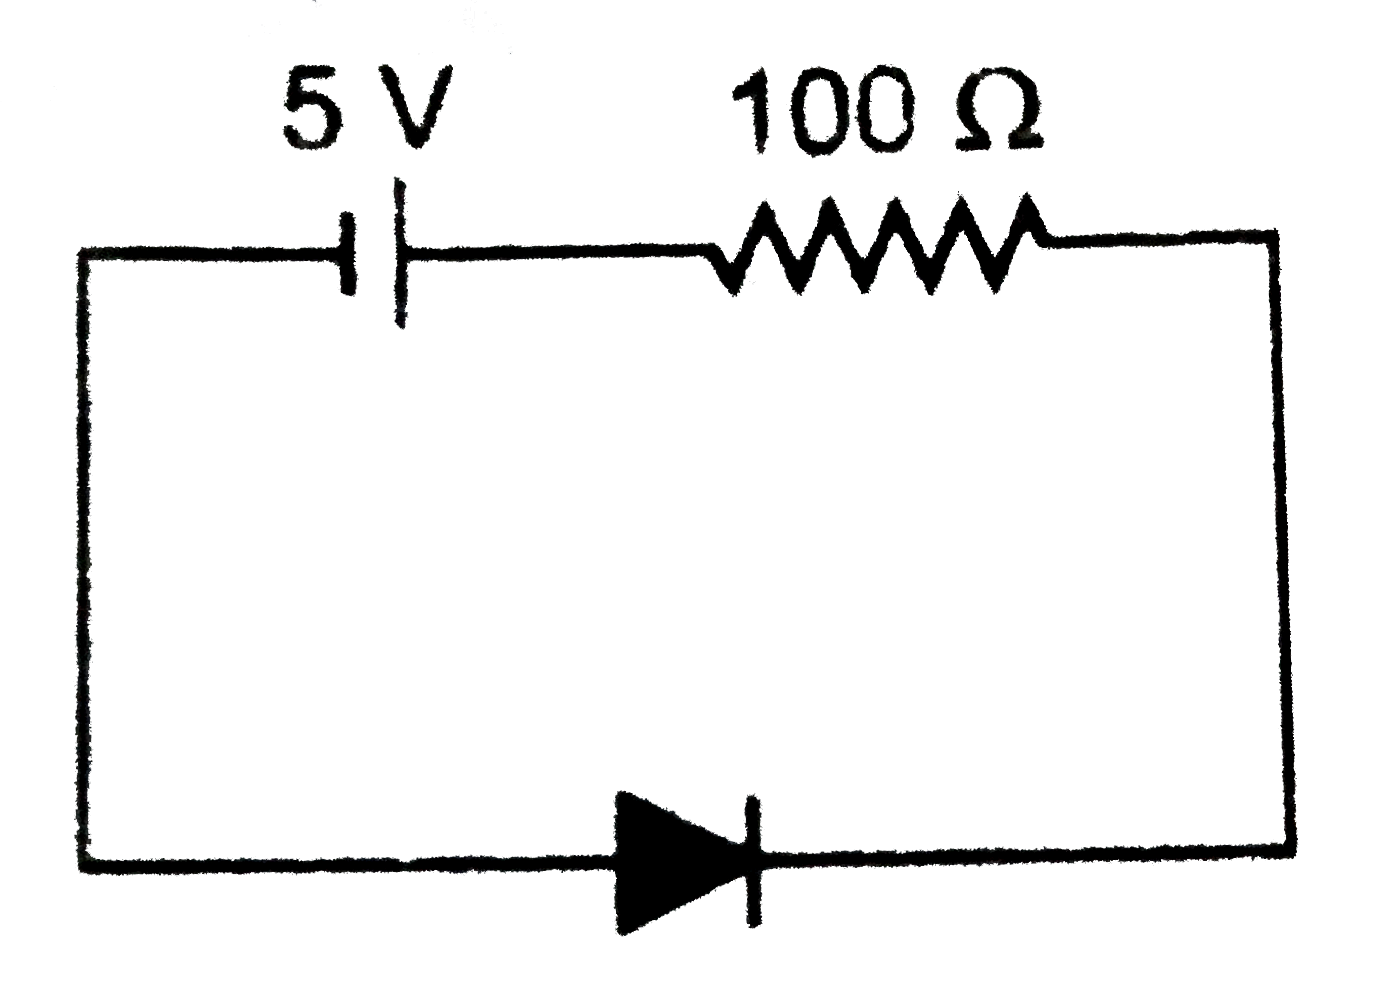 चित्र में प्रदर्शित डायोड में बहने वाली अपवाह धारा 20 mu A  है। परिपथ में नेट धारा तथा डायोड के सिरों का विभवान्तर ज्ञात कीजिये।